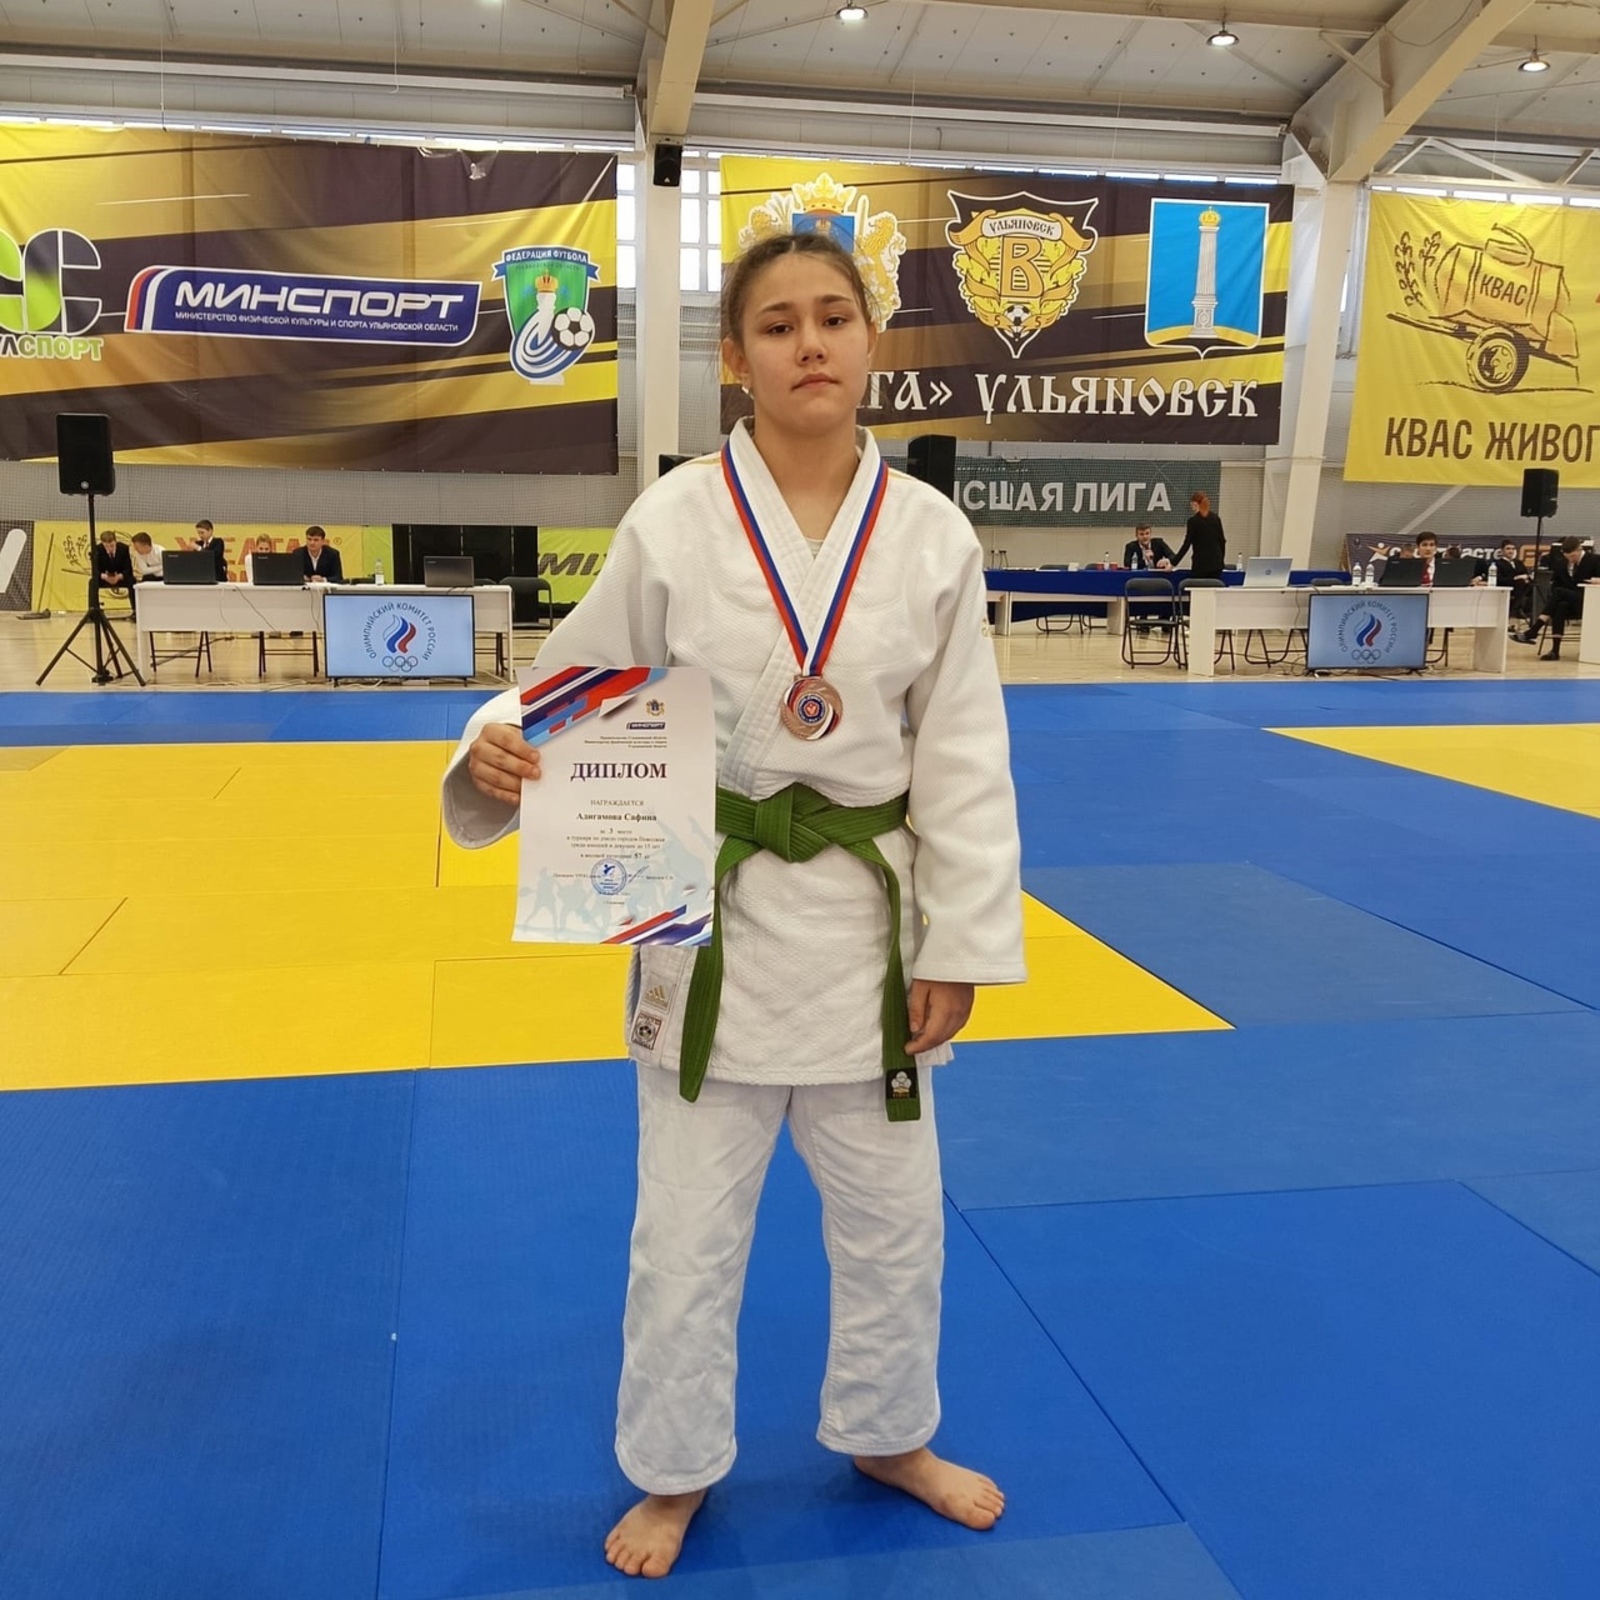 Сафина Адигамова в упорной борьбе завоевала бронзовую медаль.